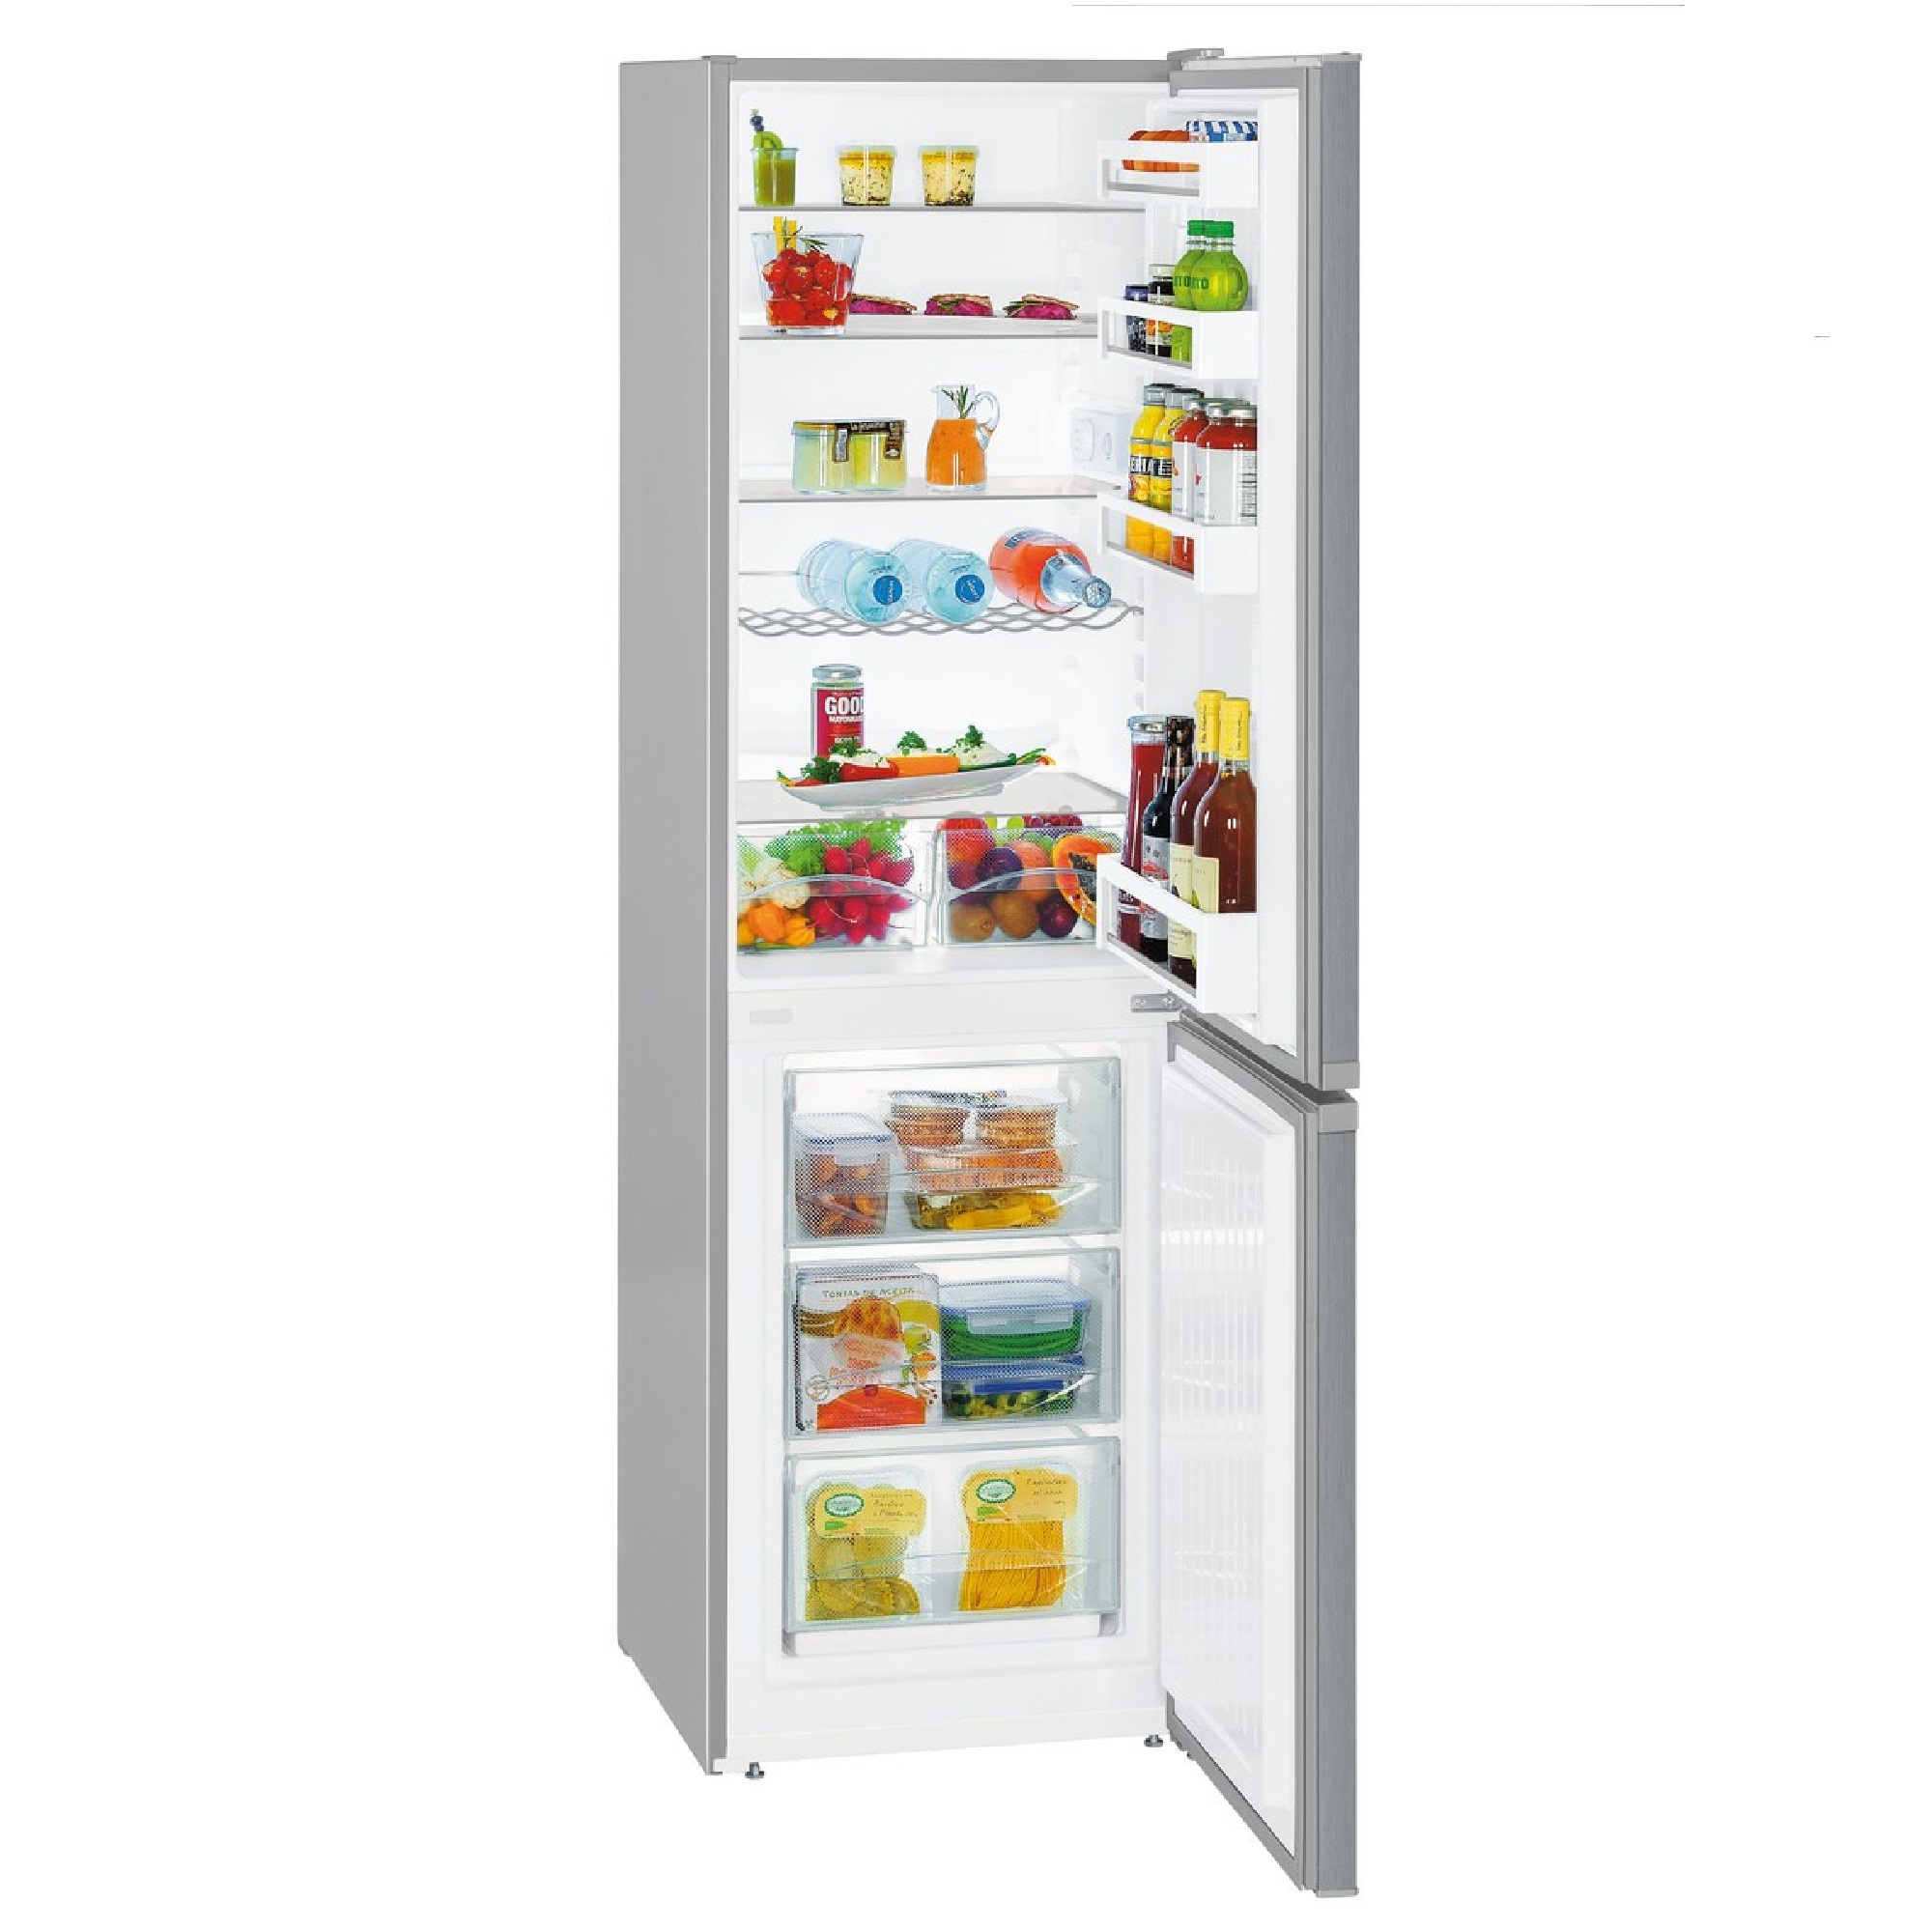 Сколько стоит холодильник liebherr. Холодильник Liebherr cuel 3331. Холодильник Liebherr CUWB 3311. Liebherr cuel 3331-22 001 холодильник. Холодильник Liebherr CUEF 3331-20 001.